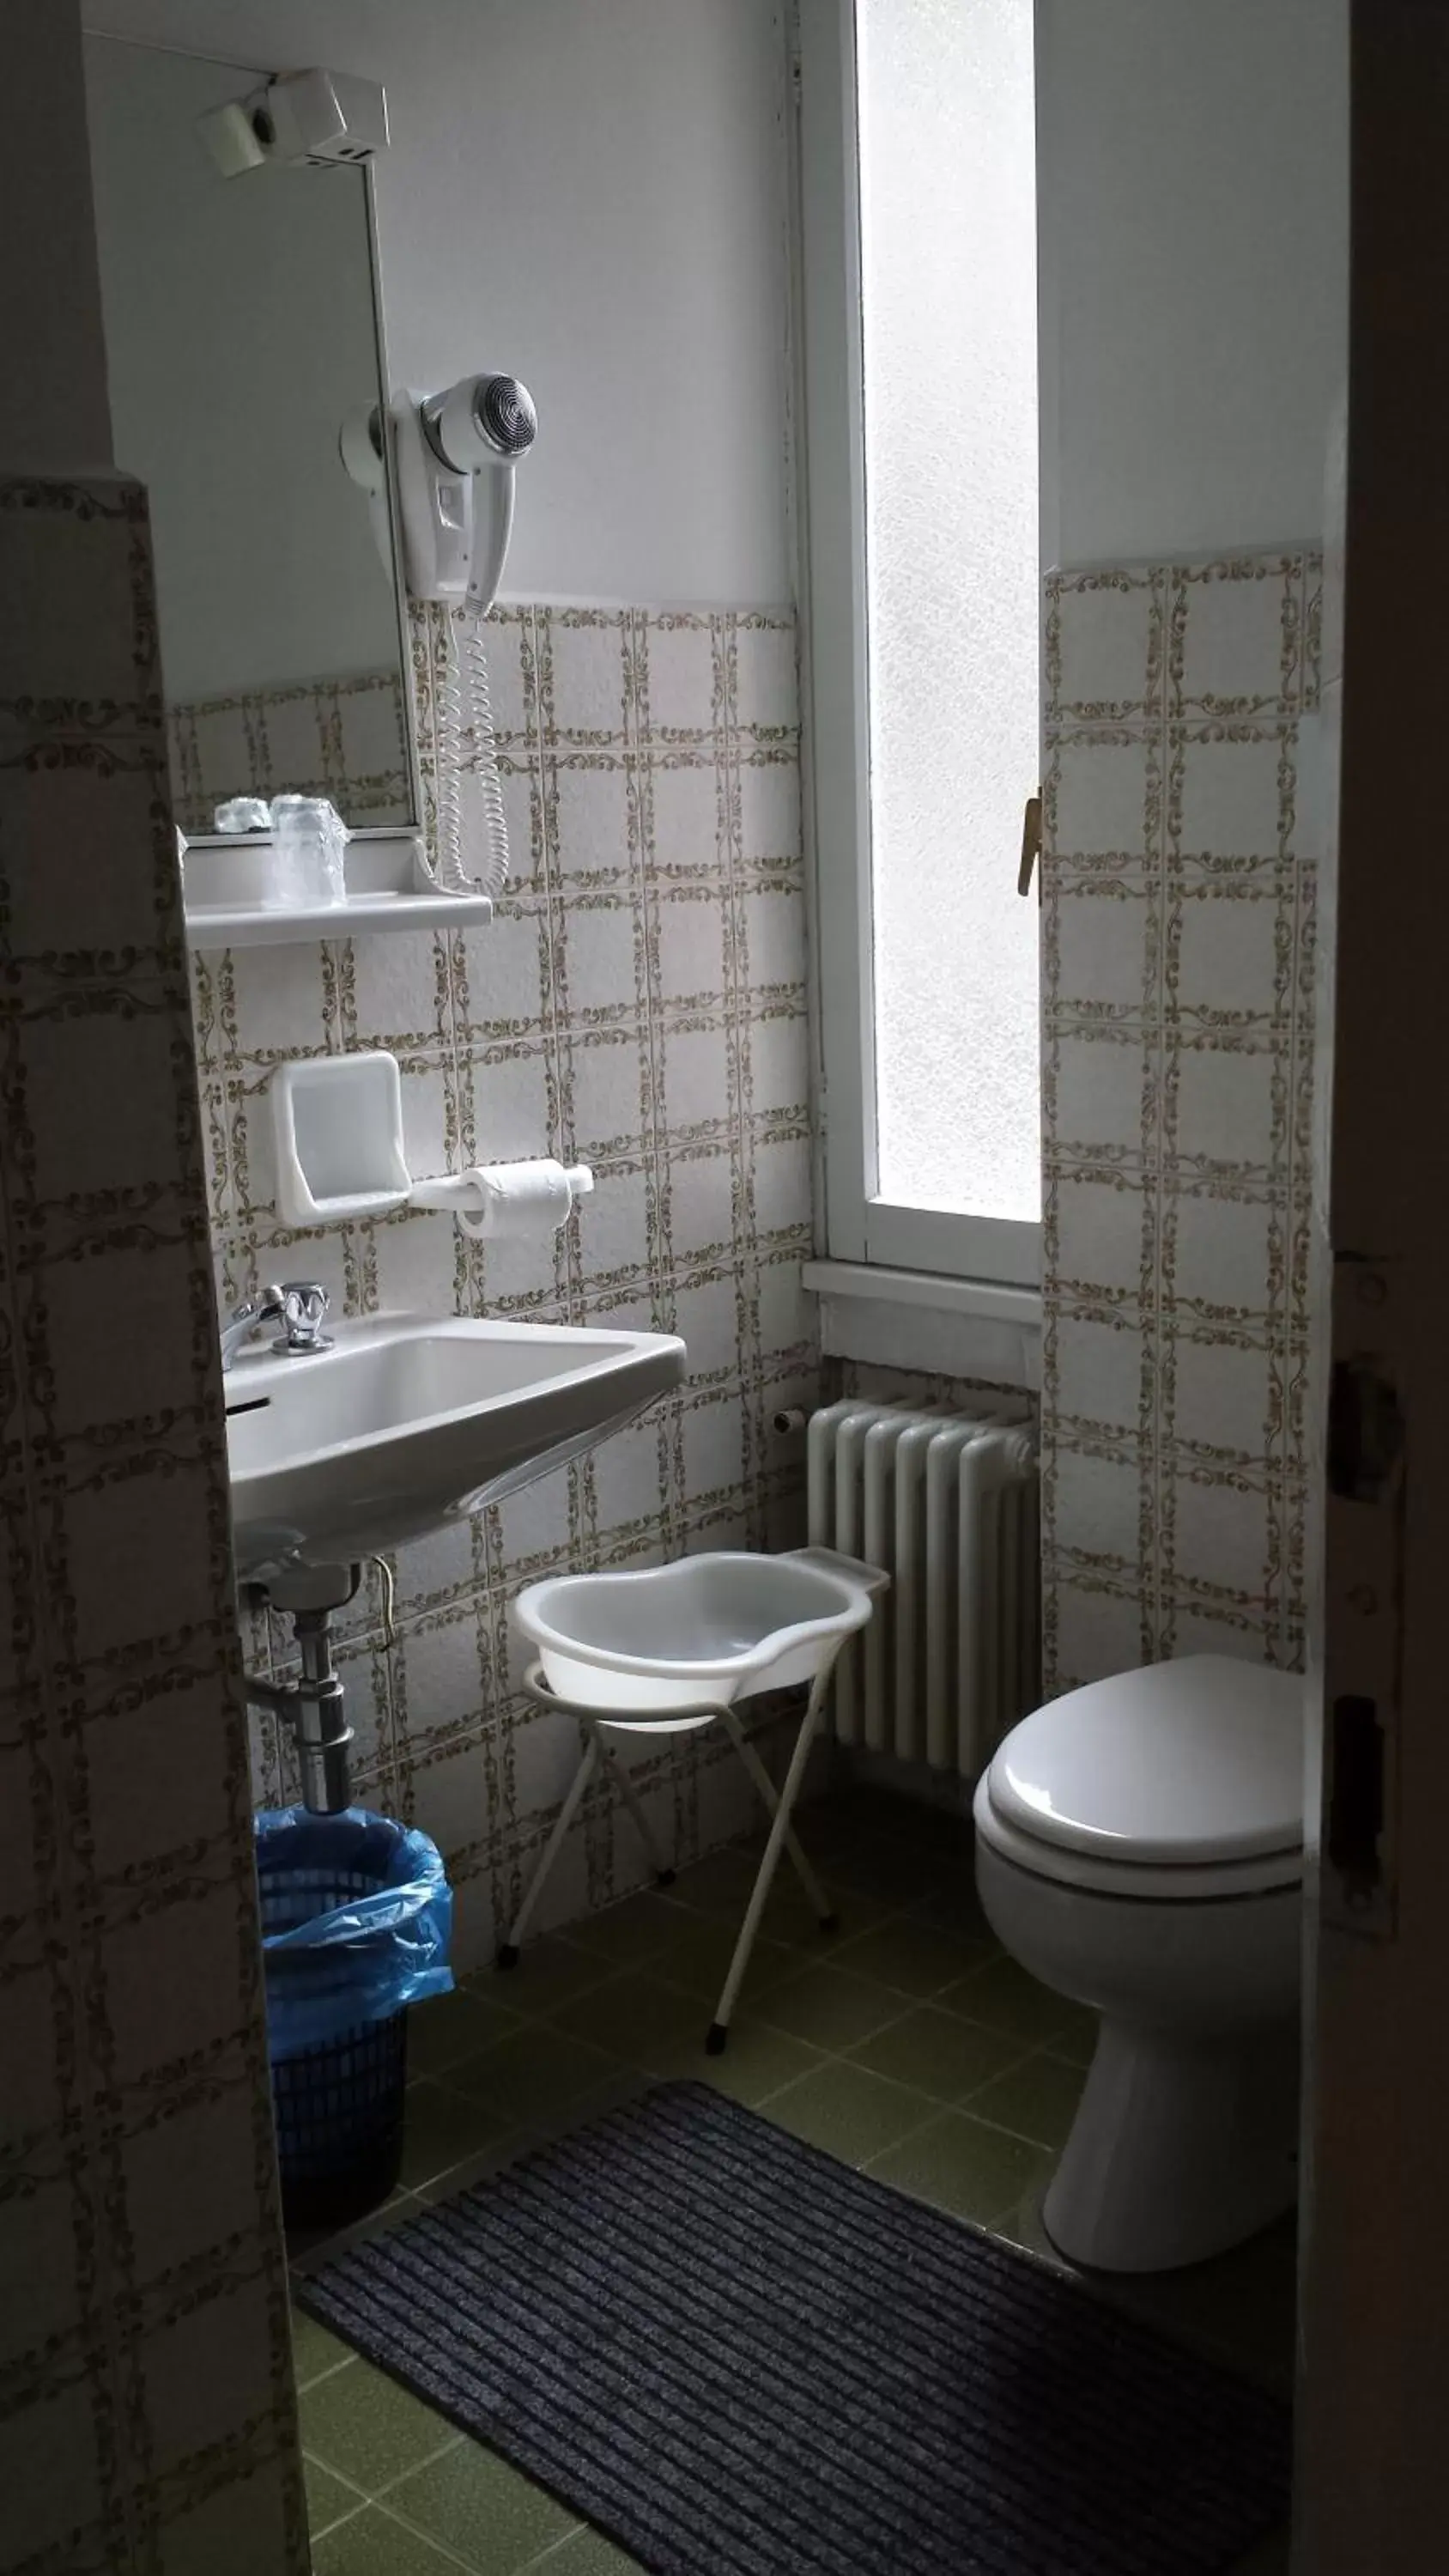 Bathroom in Hotel Mirabeau